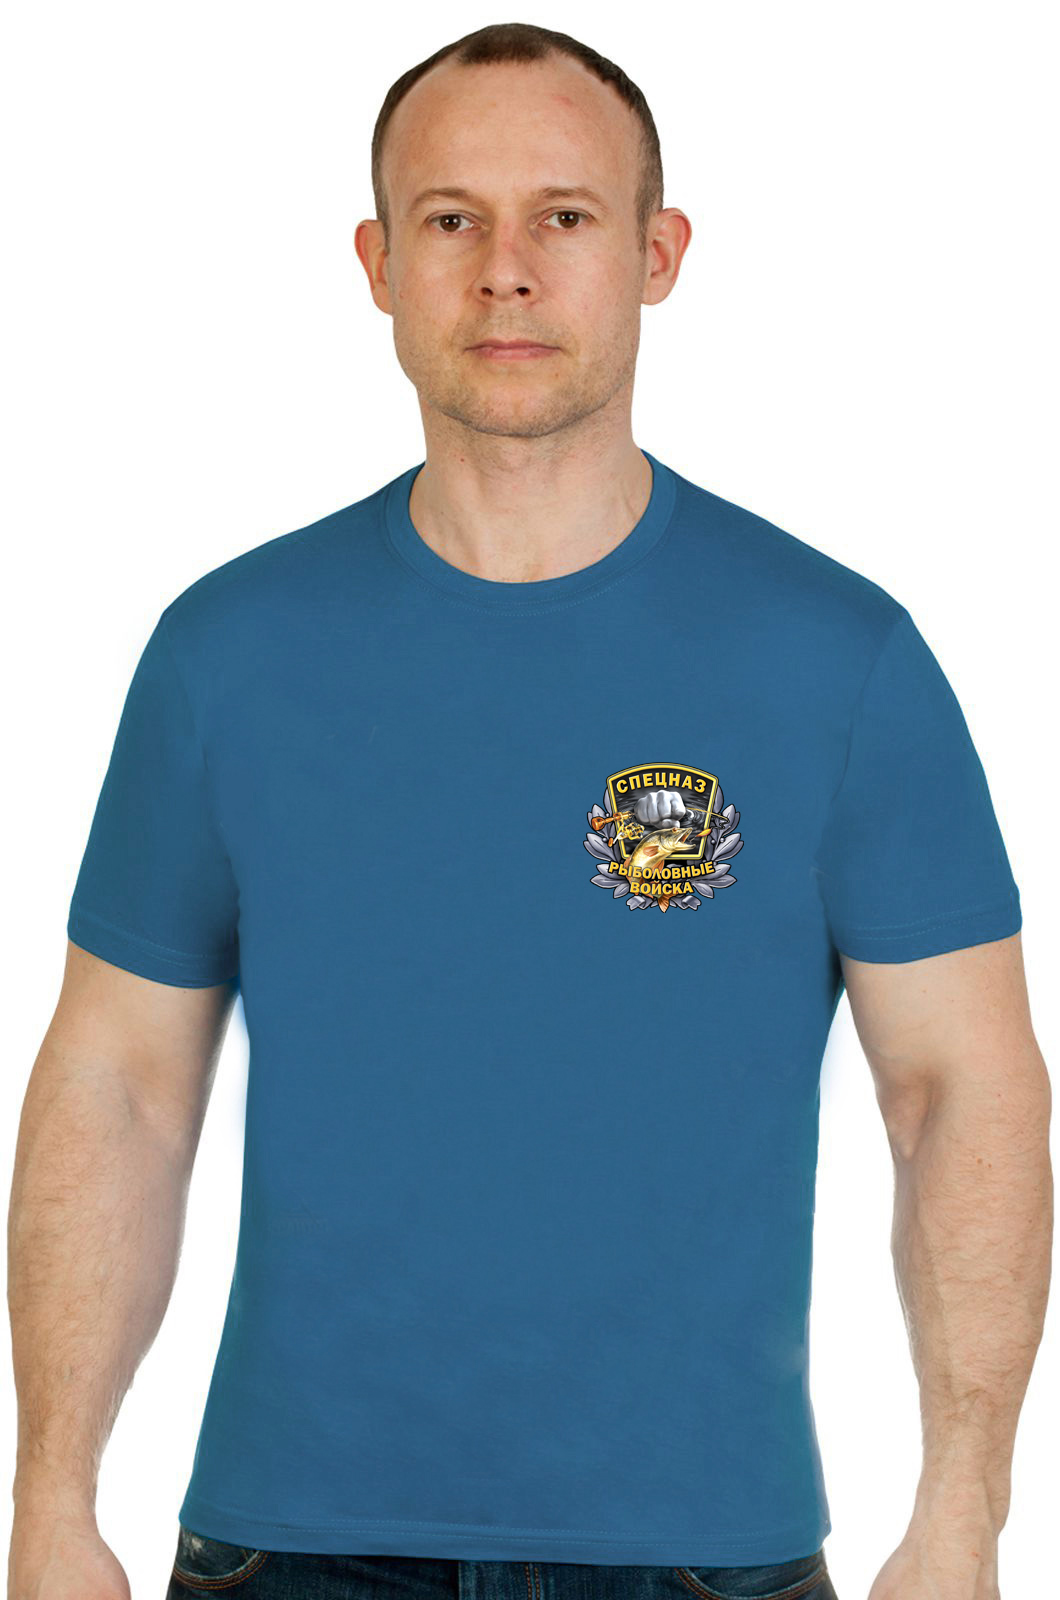 Классная футболка "Рыболовные войска. Спецназ". 